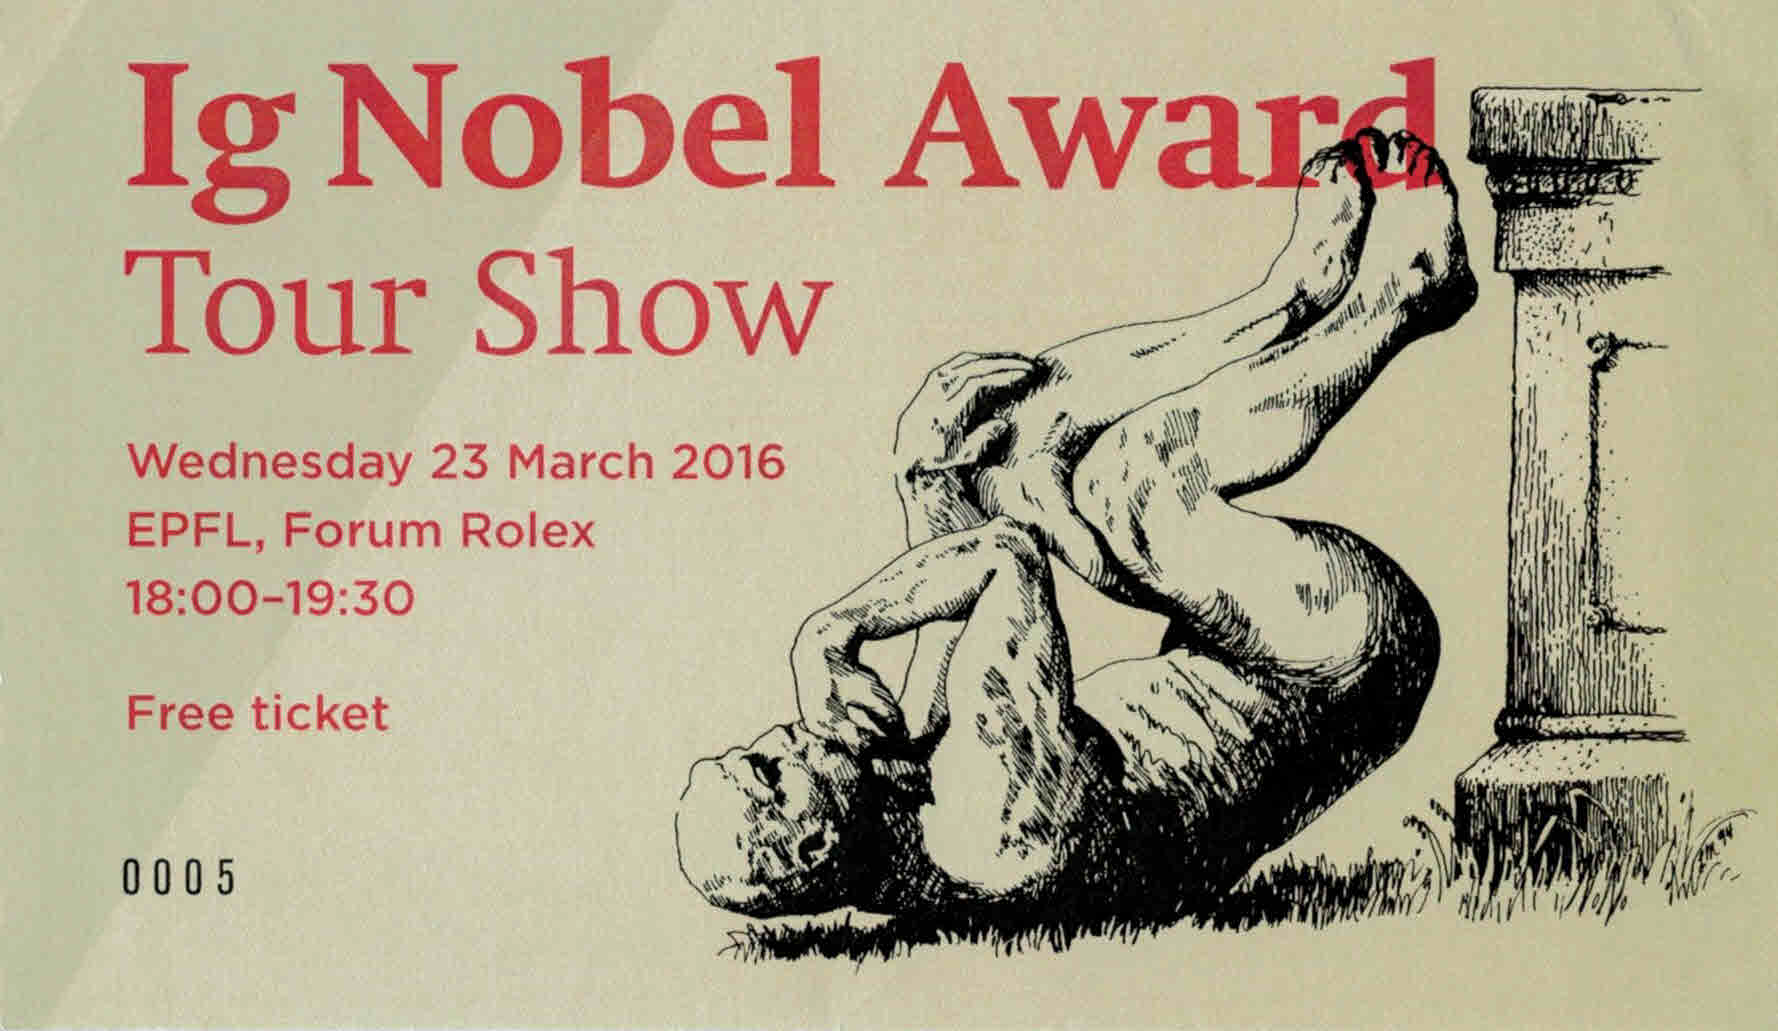 igNobel Award Tour Show EPFL